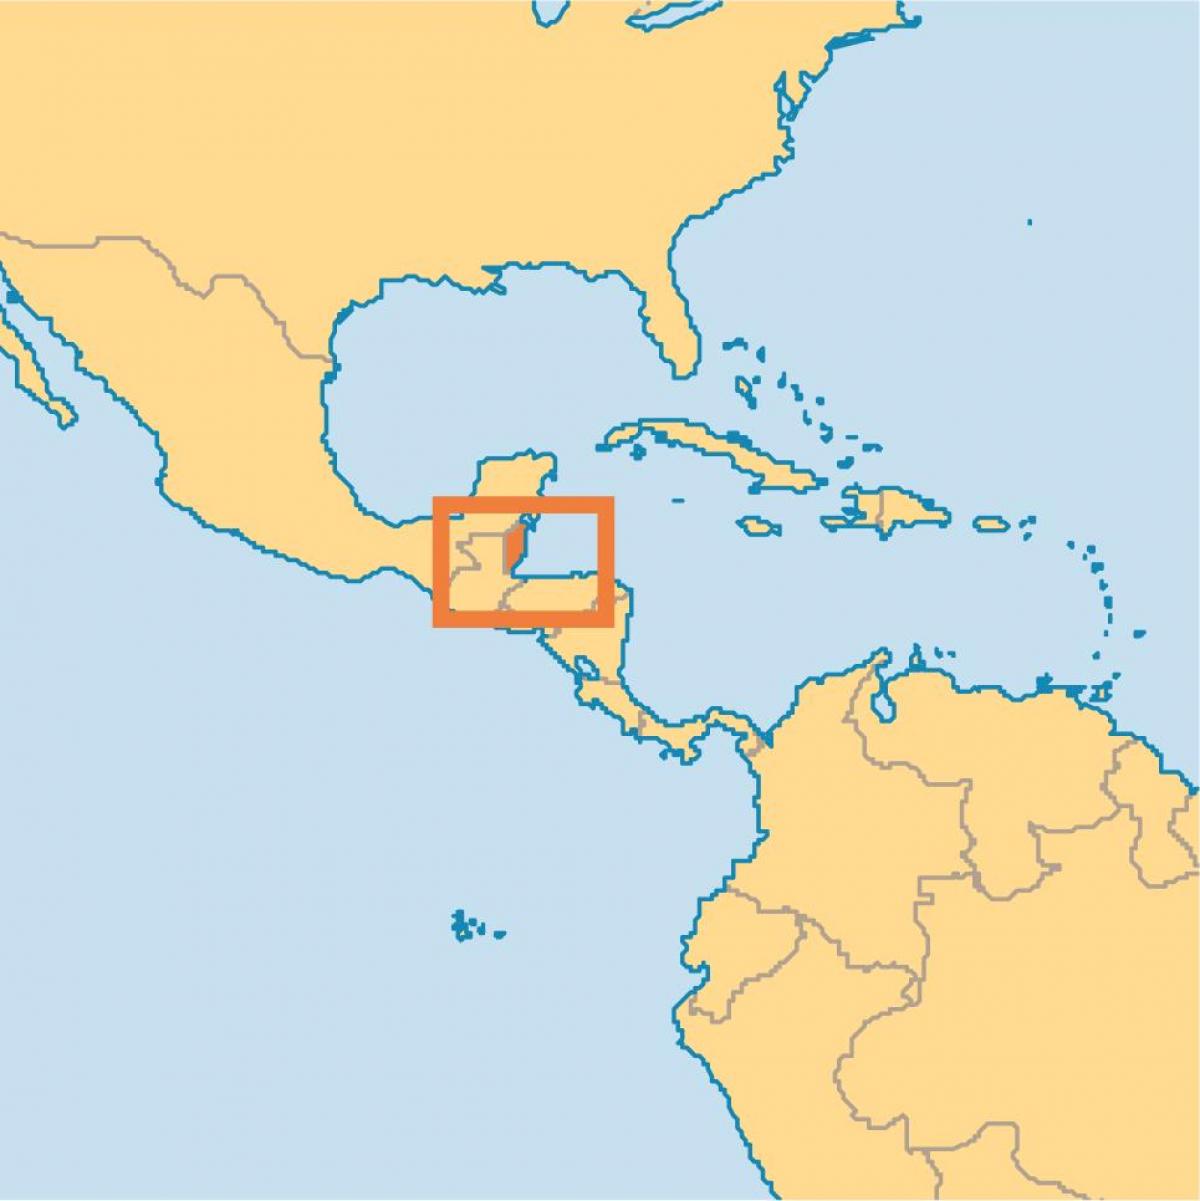 Lokalizacja Belize na mapie świata